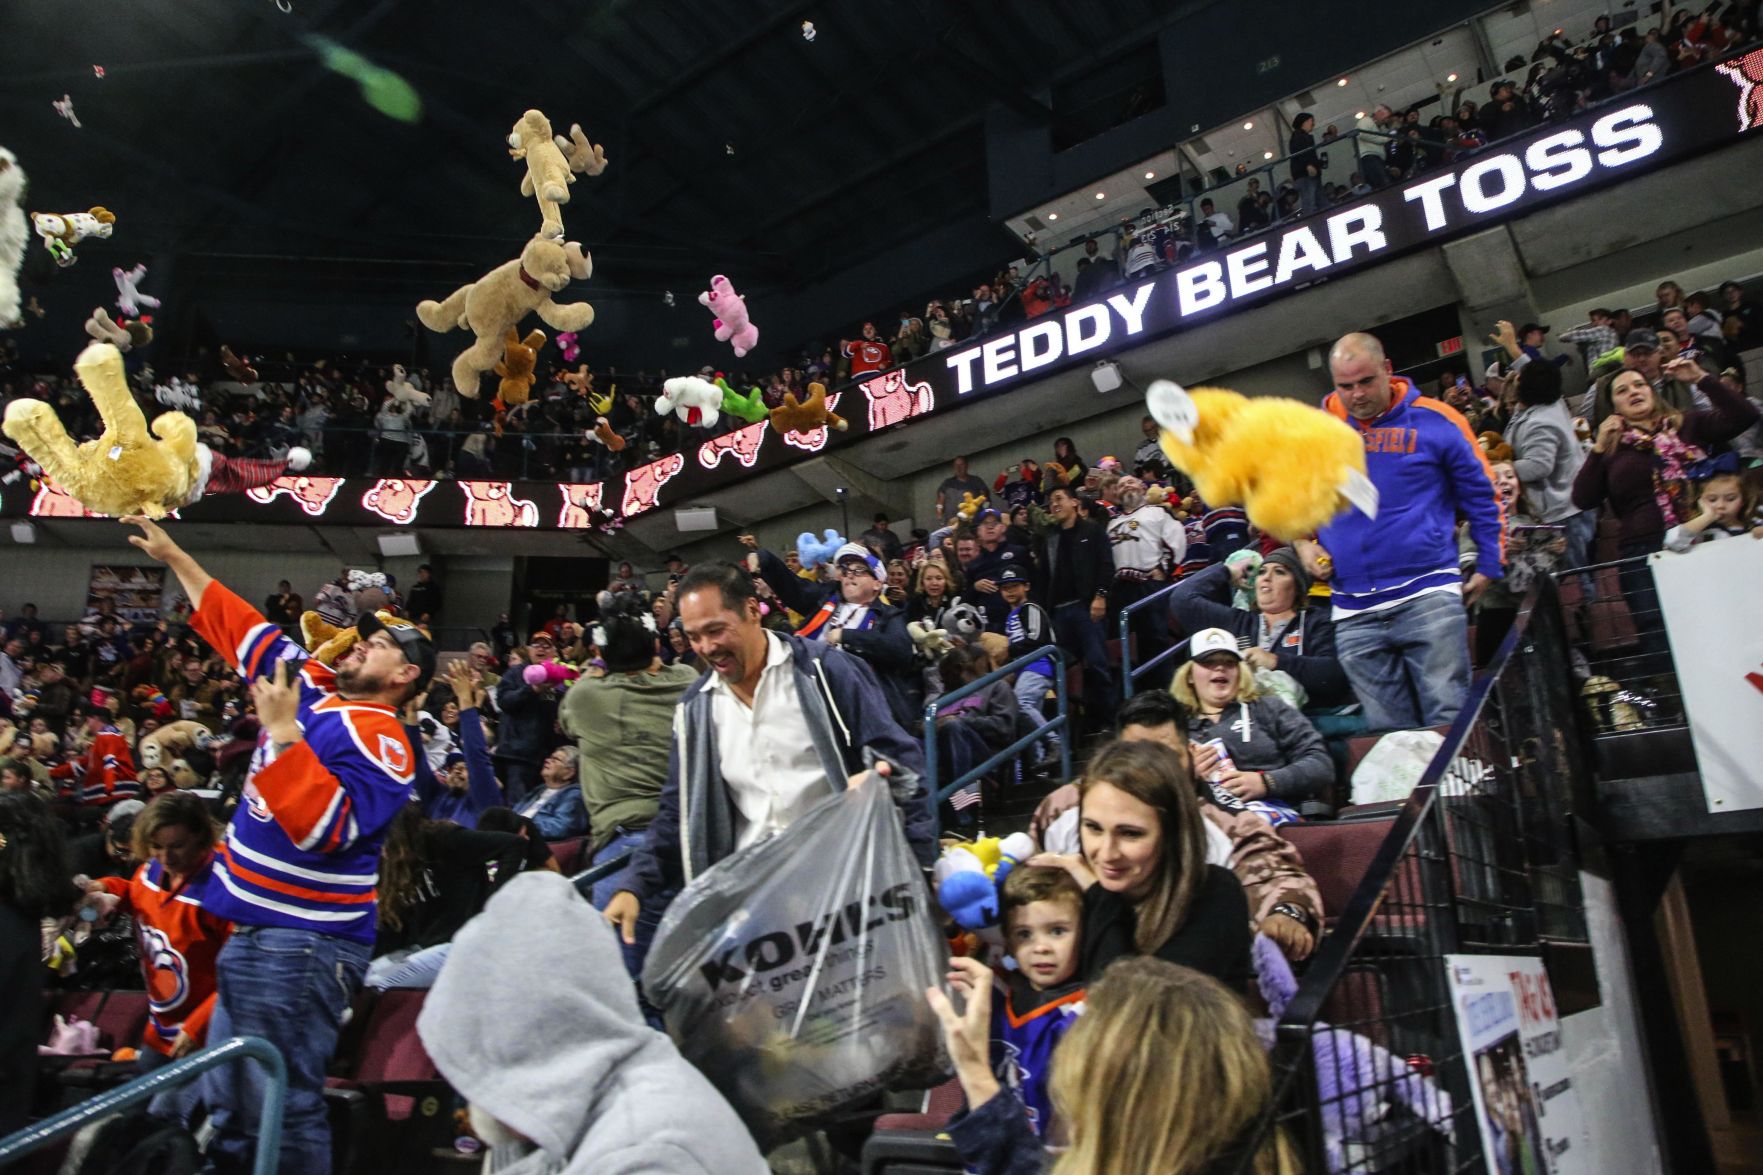 condors teddy bear toss 2018